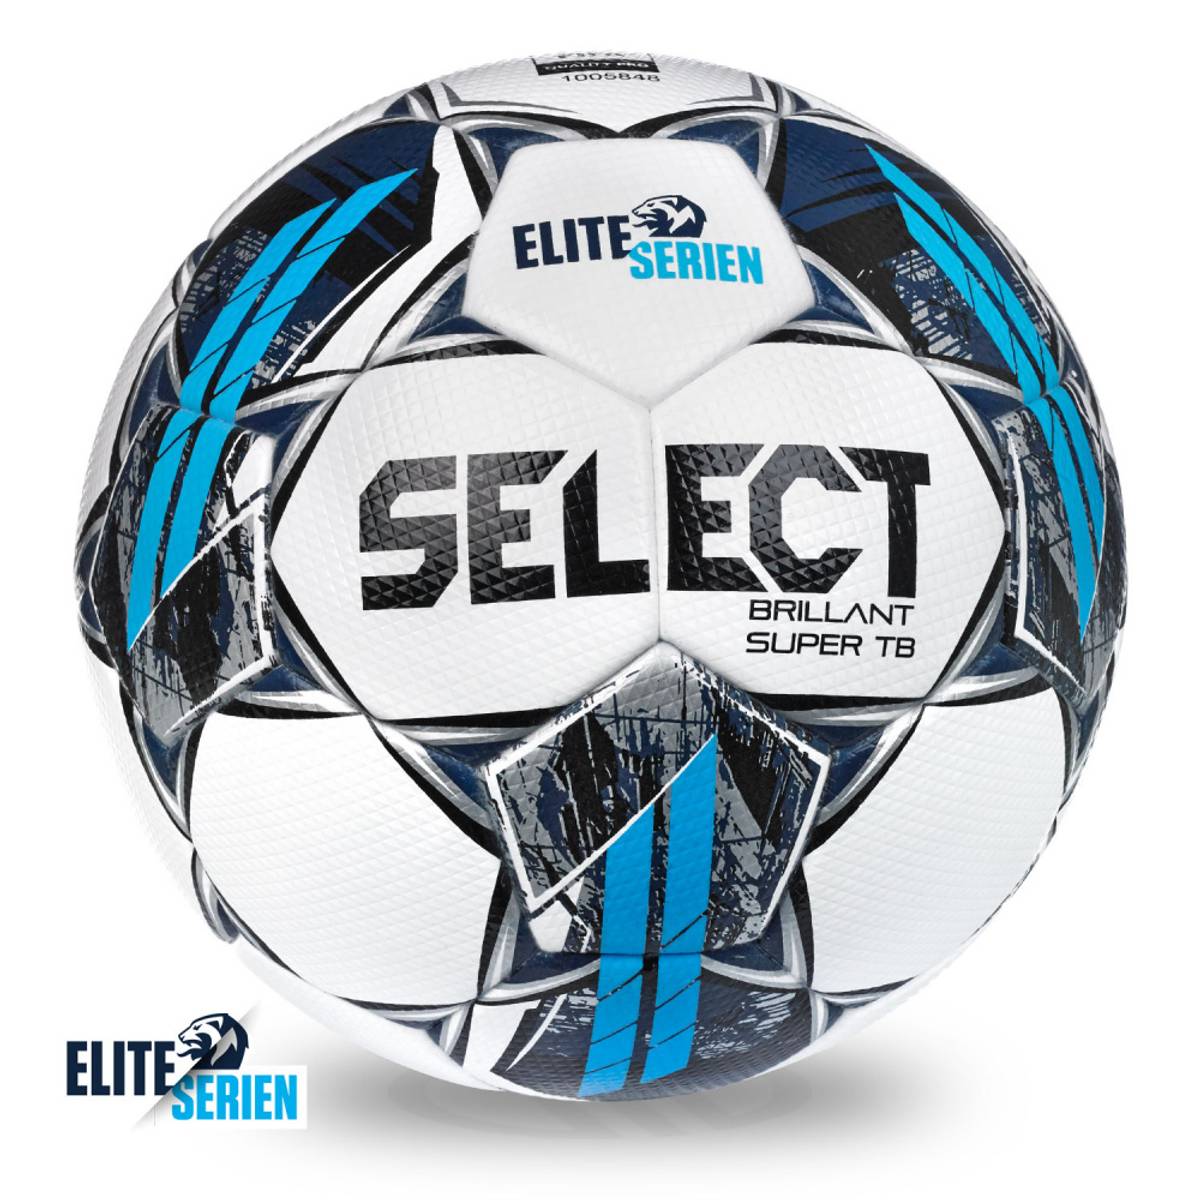 Select Brilliant Super TB Eliteserien 2022 Fotball Hvit